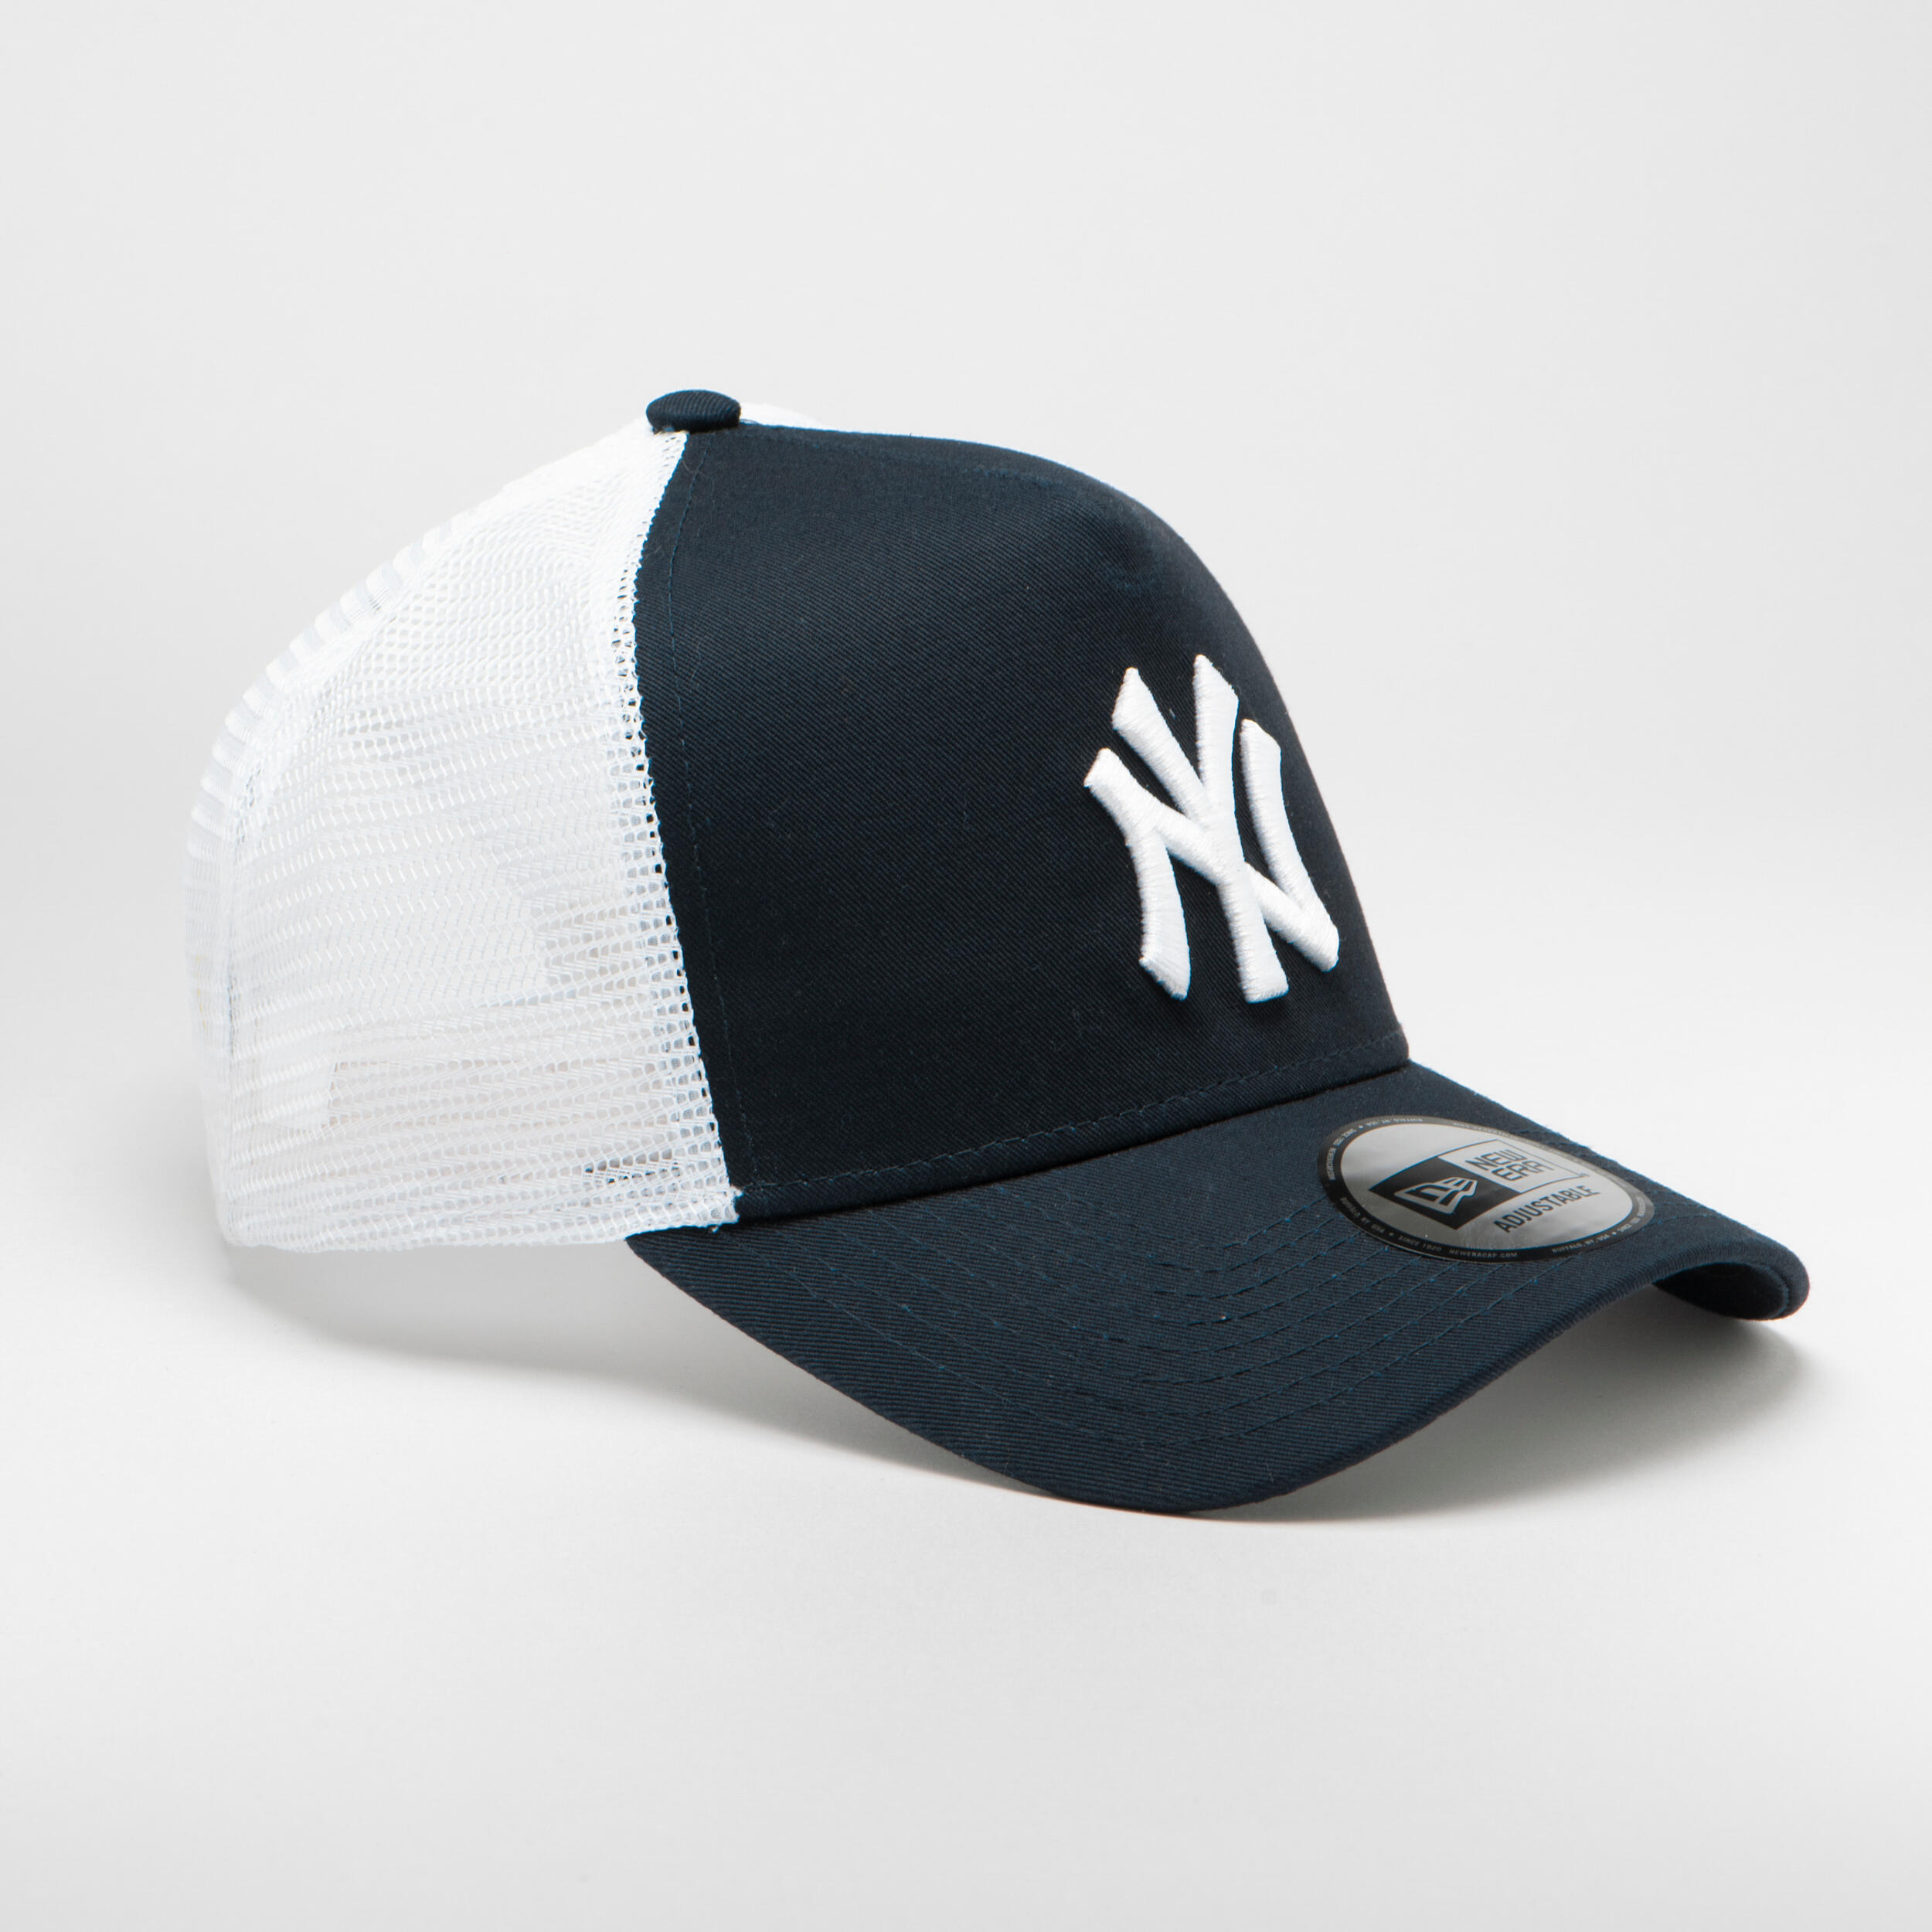 Men's/Women's MLB Baseball Cap - New York Yankees Black/White 2/9